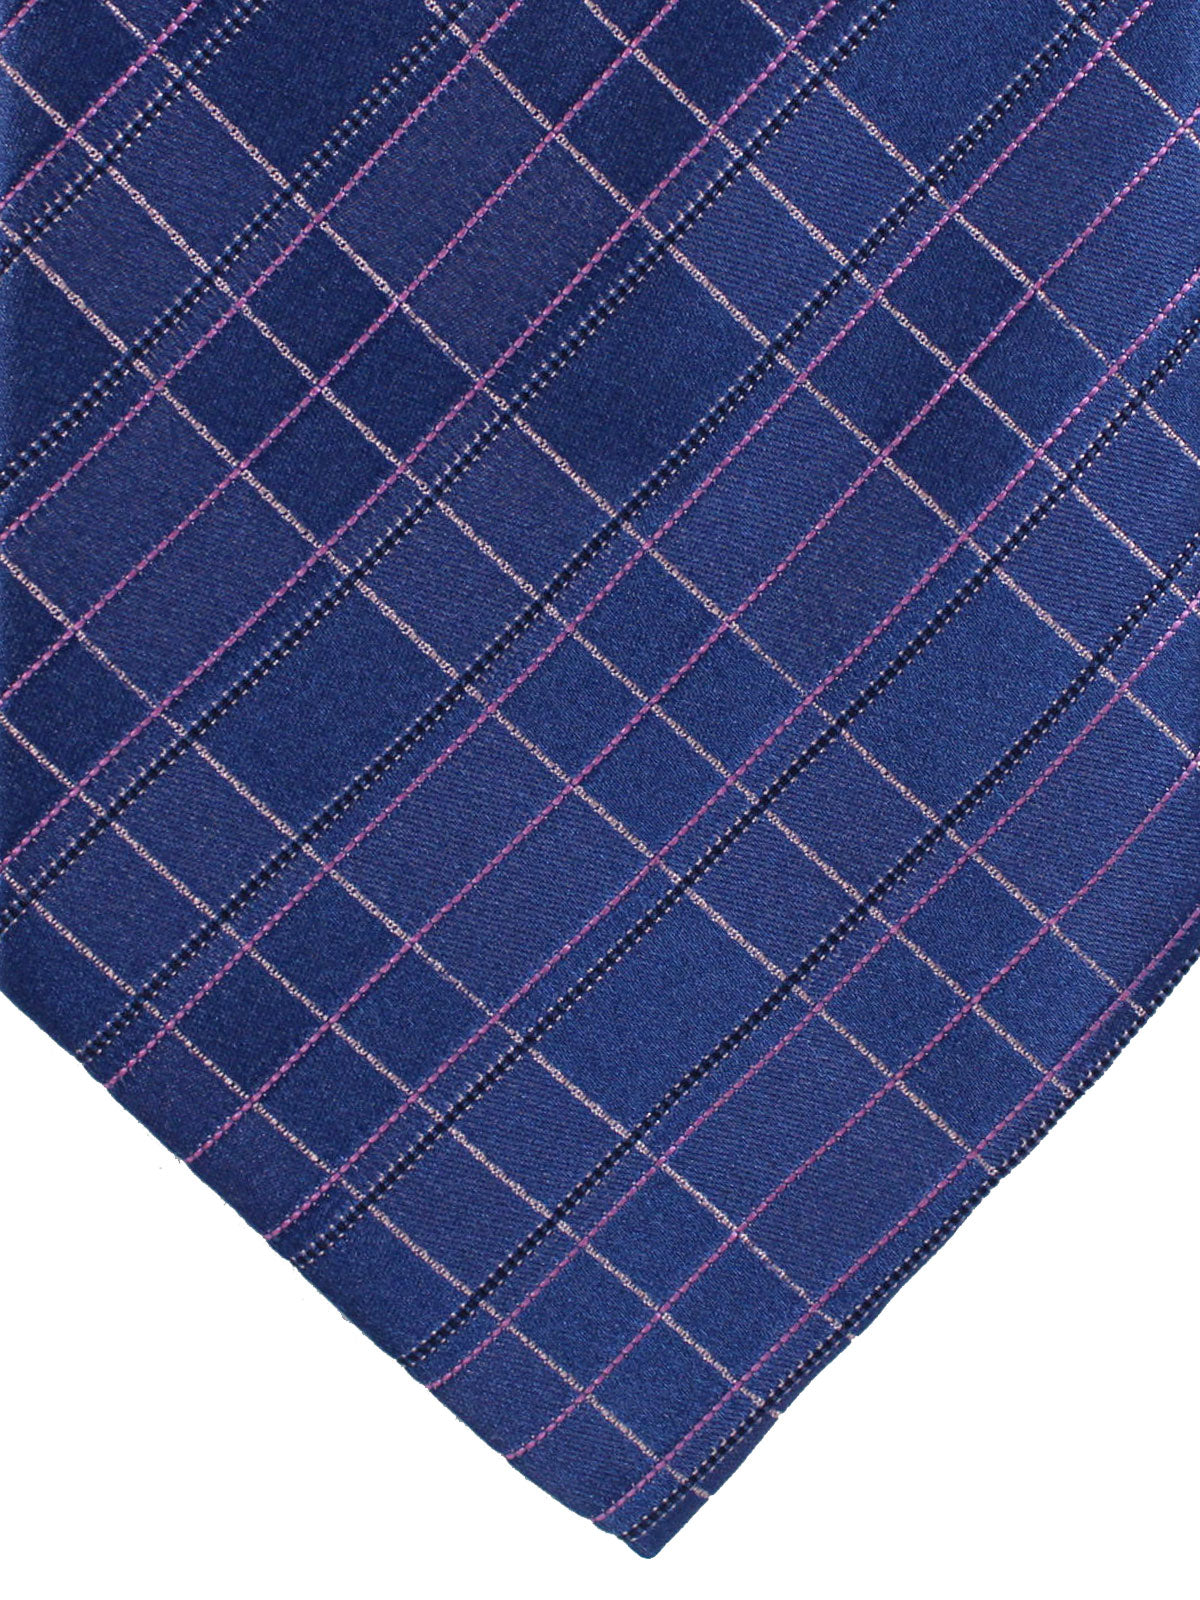 Zilli Silk Tie Dark Blue Pink Check - Wide Necktie